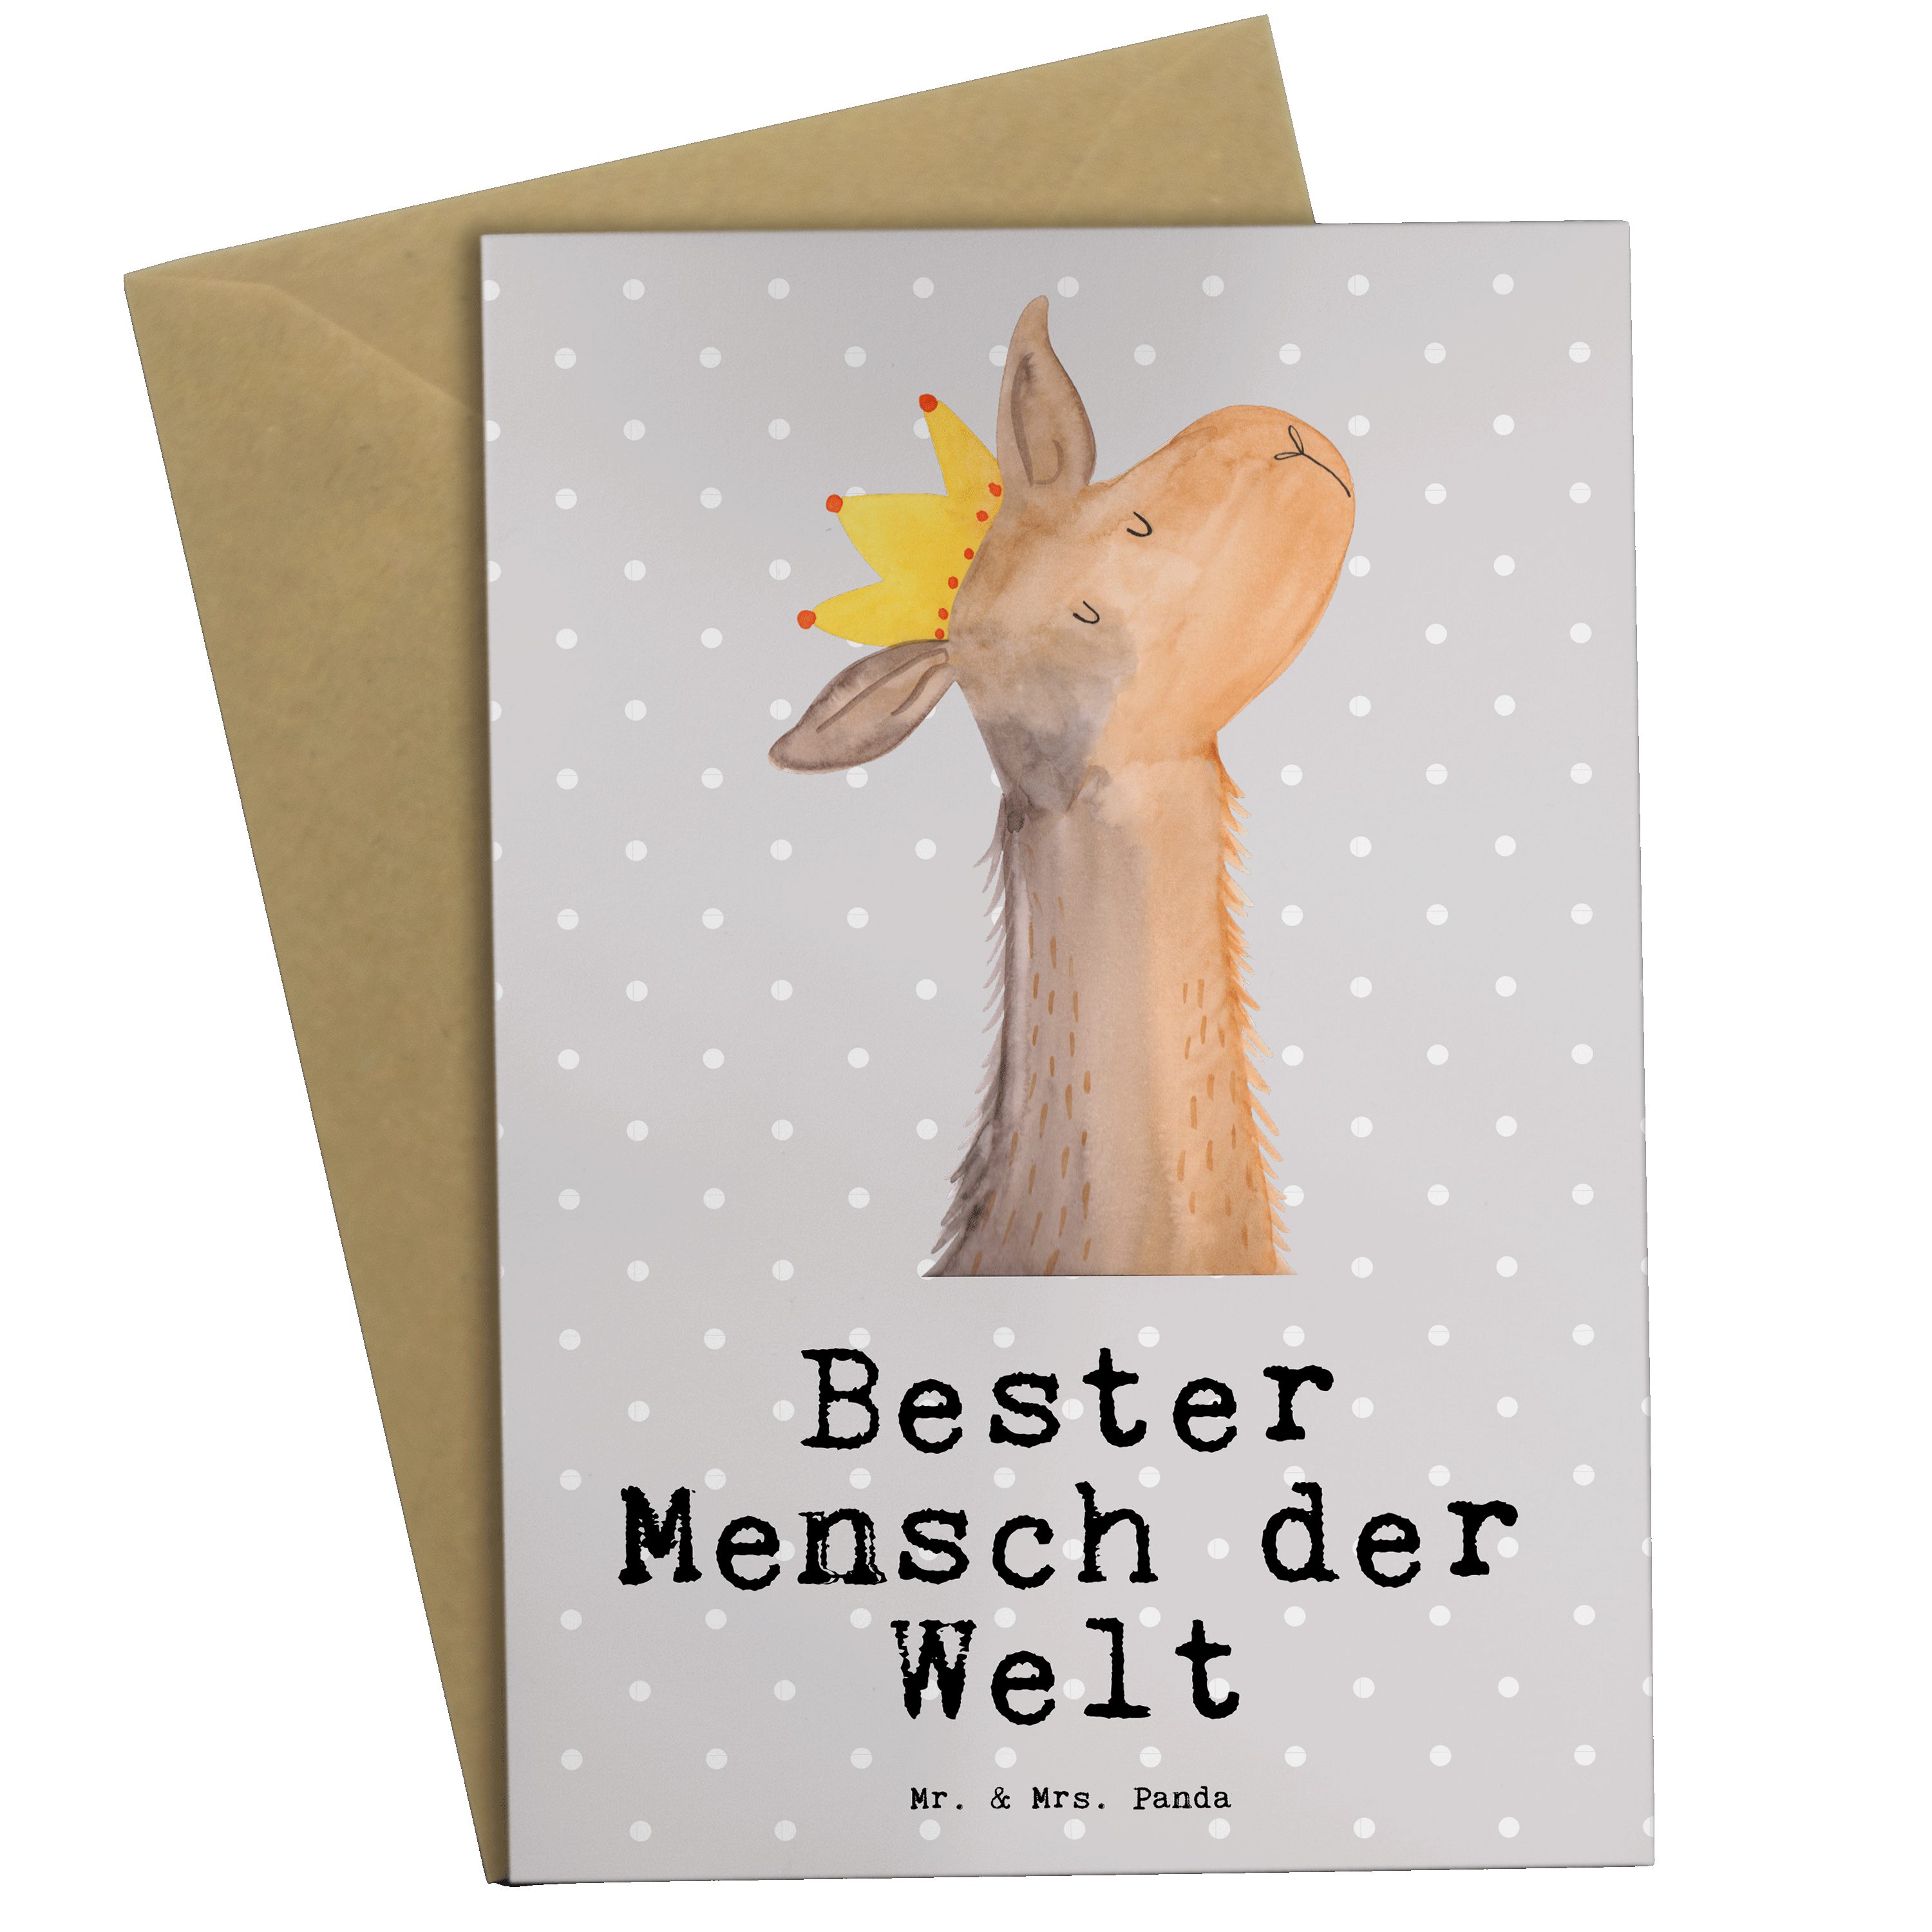 Mr. & Mrs. Panda Grußkarte Lama Bester Mensch der Welt - Grau Pastell - Geschenk, tollster Mensc